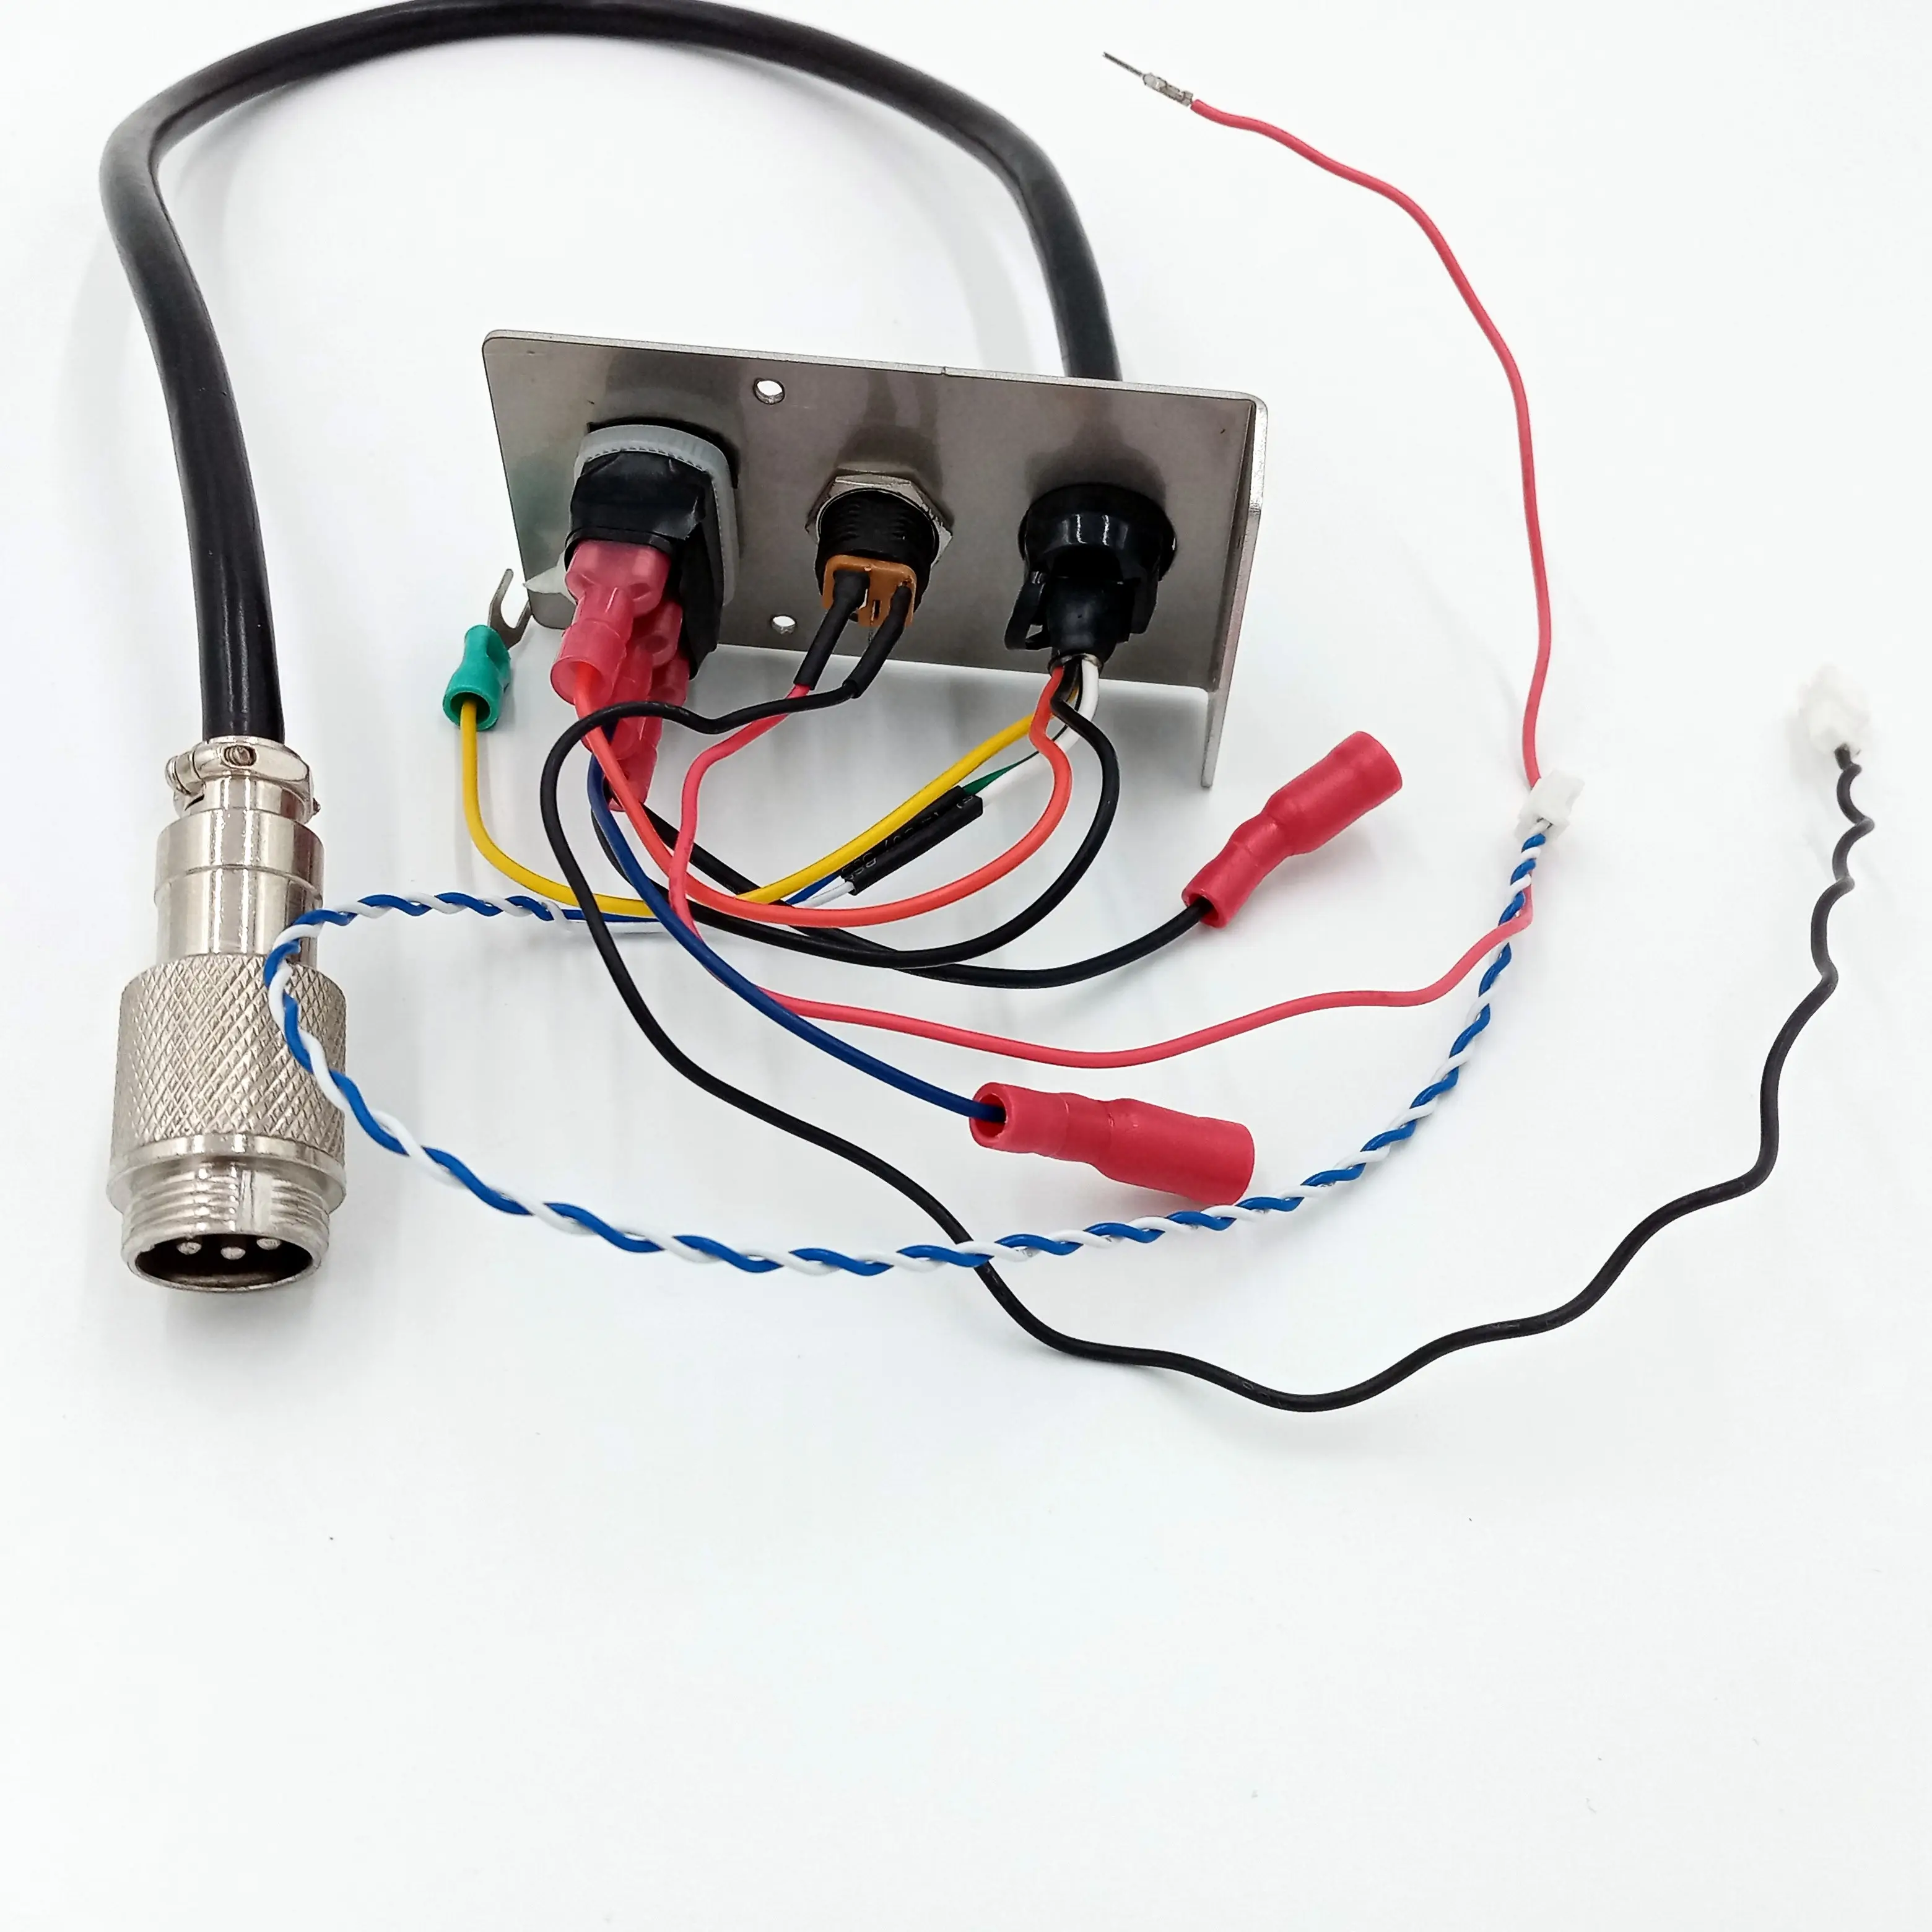 Werkseitig angepasste JST-Steck verbinder mit hoher Kosten effizienz für Kabelbäume, Elektronik und Stecker kabel